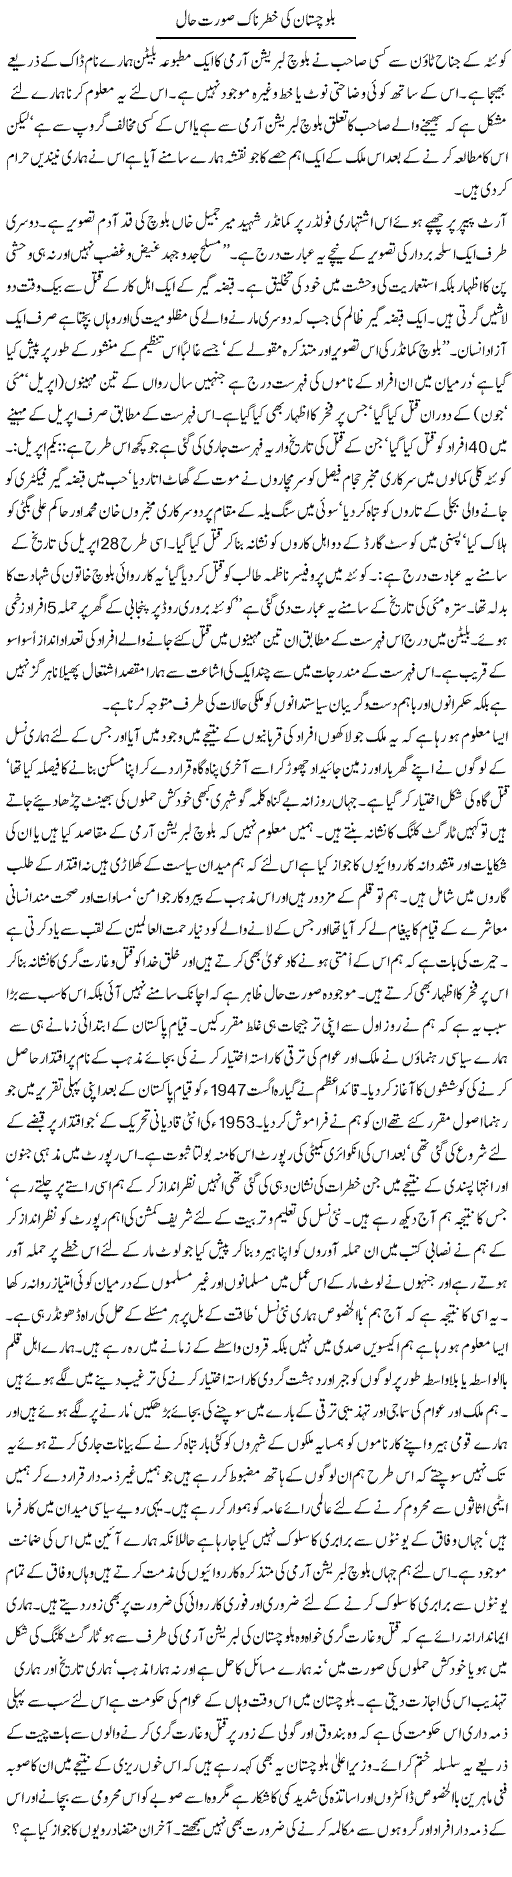 Danger in Balochistan Express Column Hameed Akhtar 25 October 2010